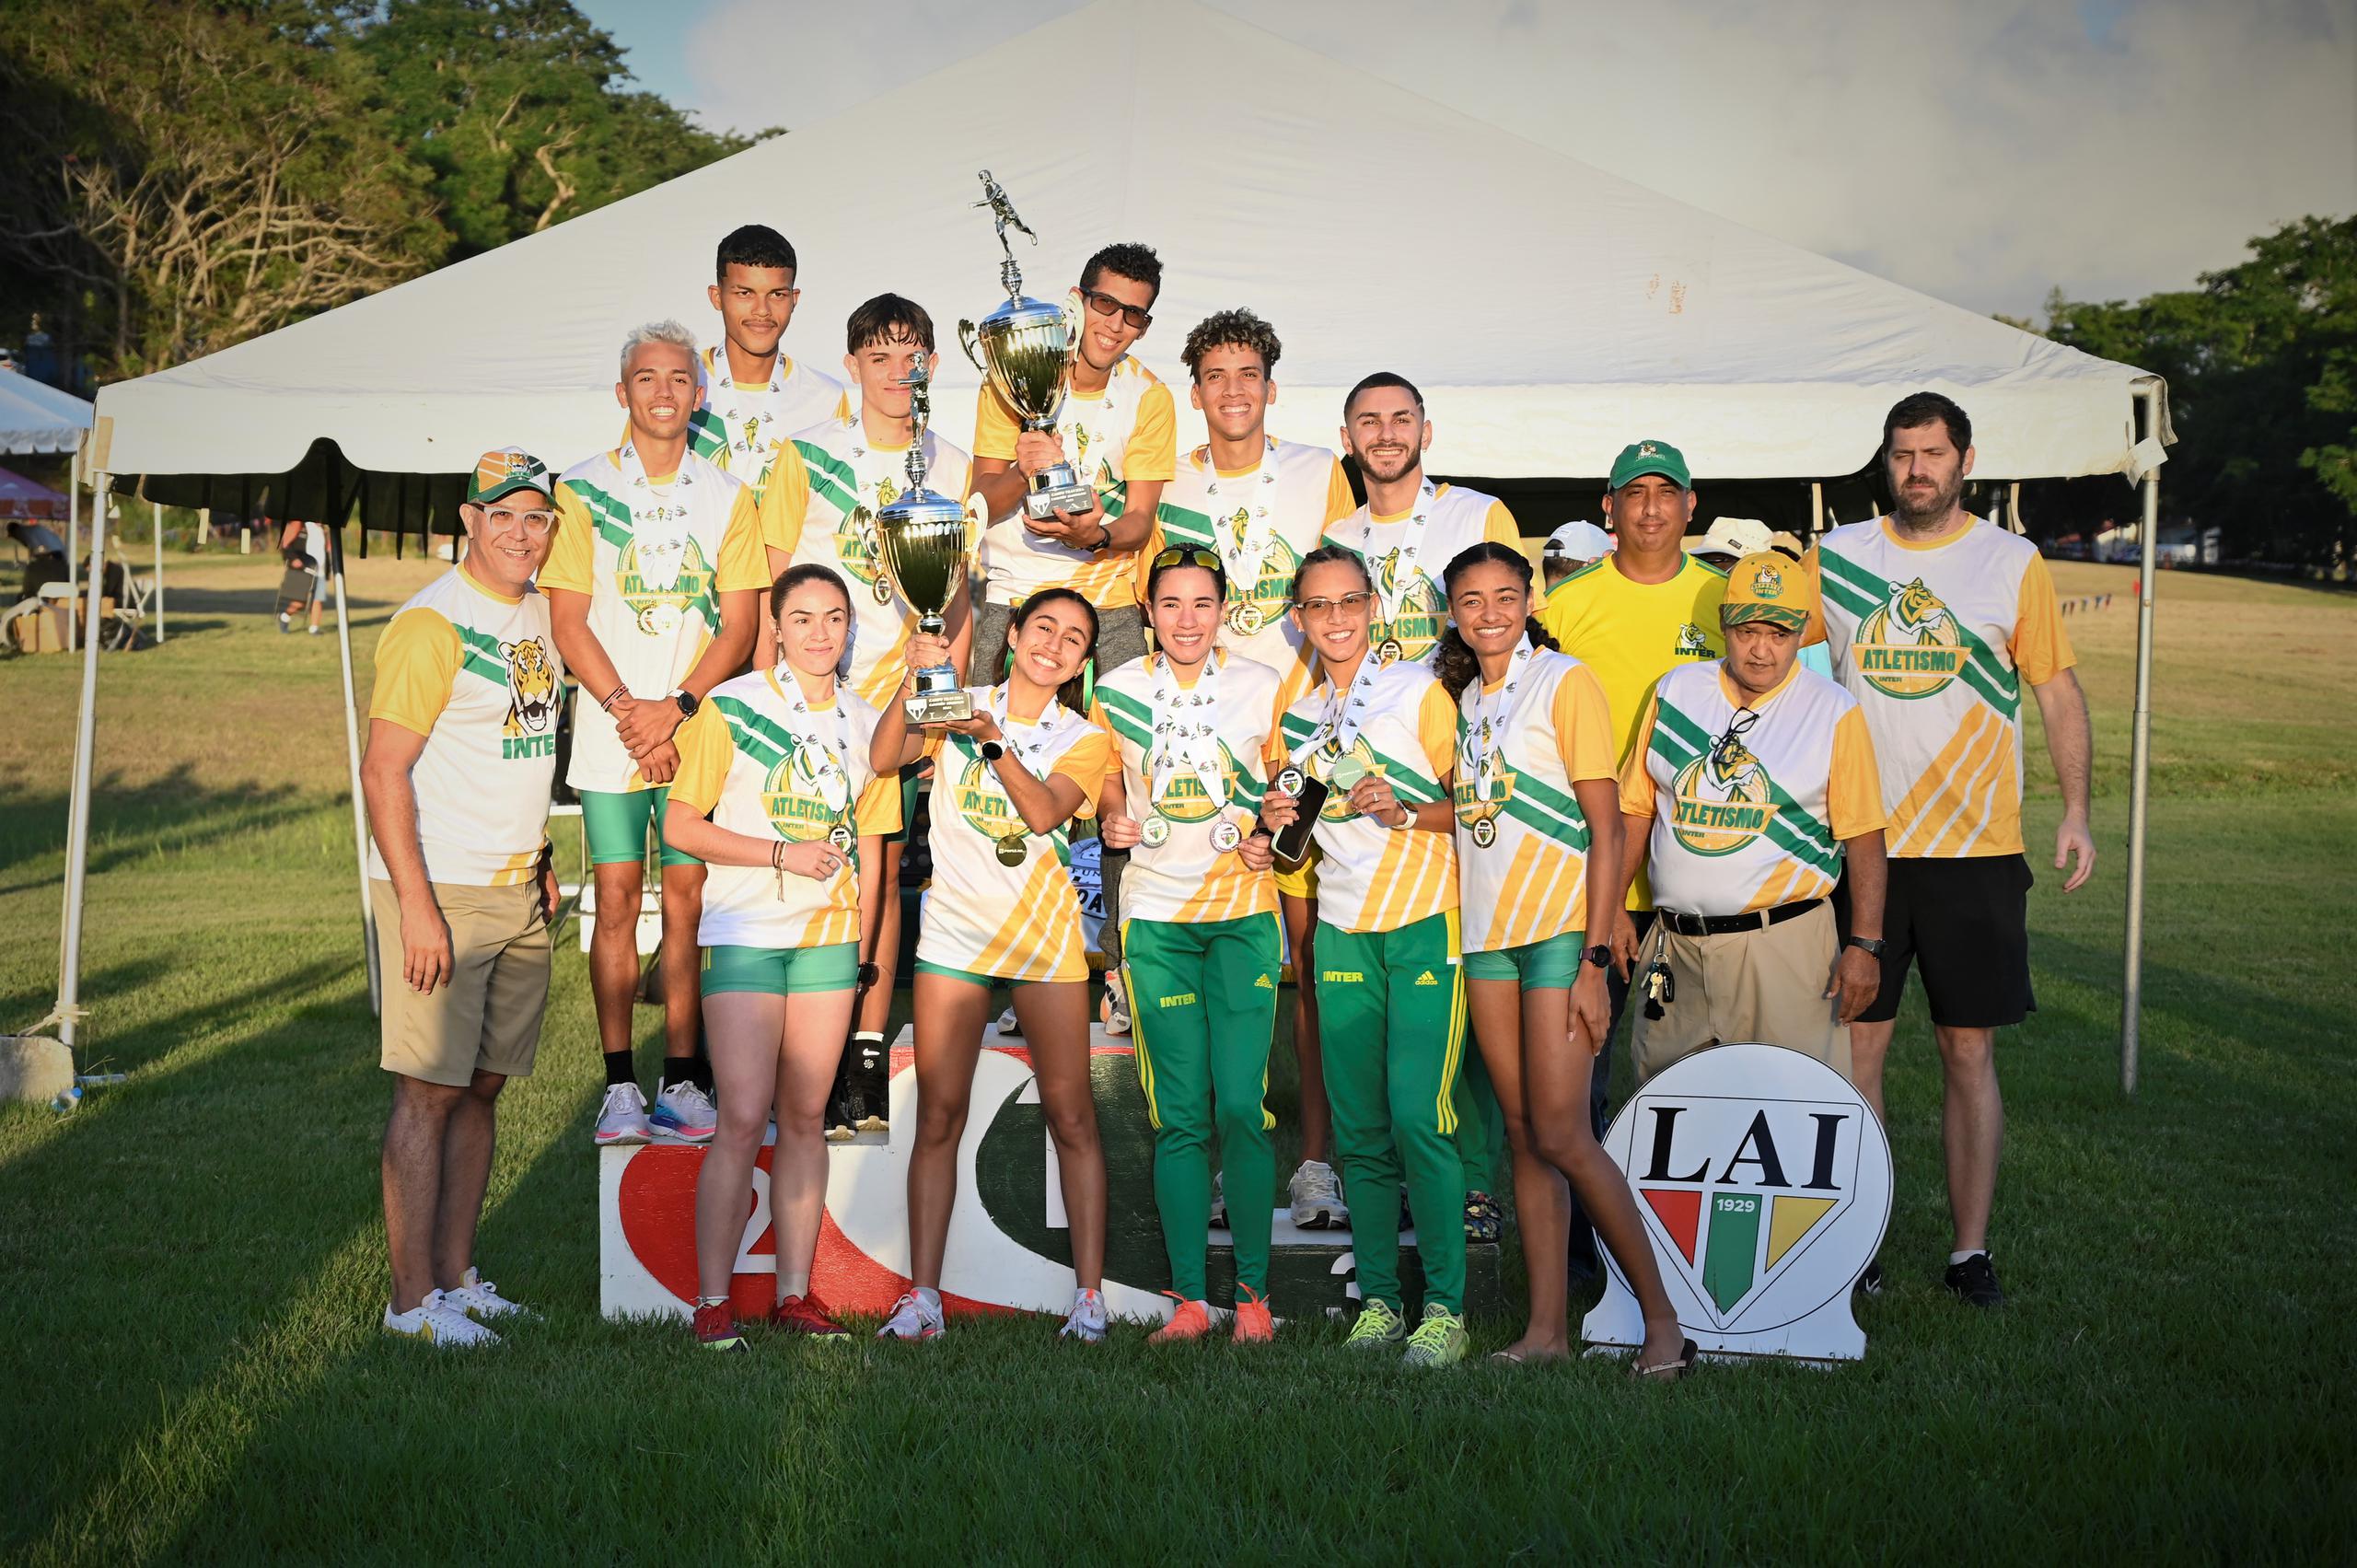 La Universidad Interamericana (UIPR) repitió en ambas ramas el campeonato de campo traviesa de la Liga Atlética Interuniversitaria.